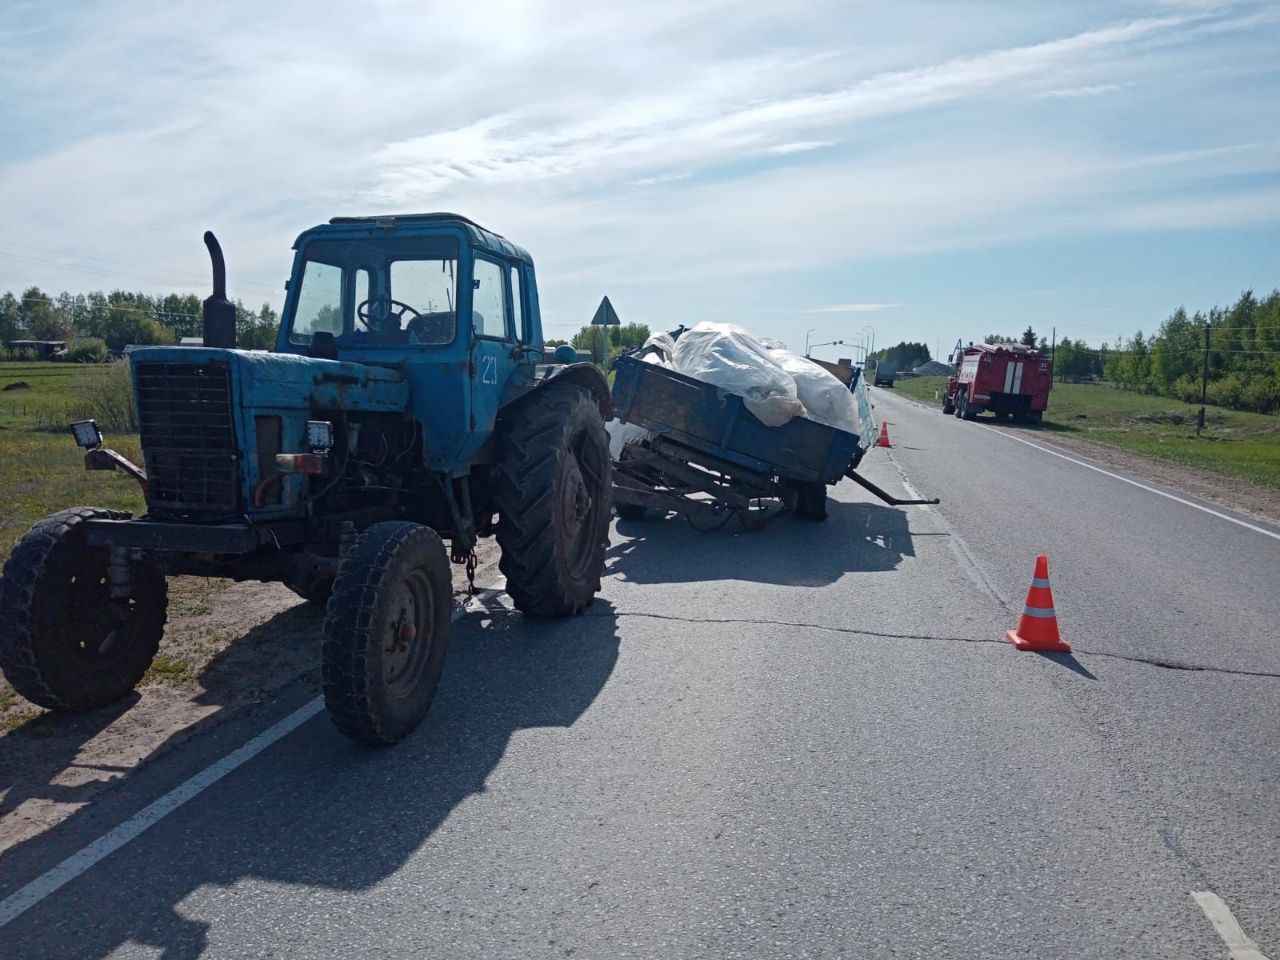 Появились подробности смертельного ДТП в Малмыжском районе с трактором